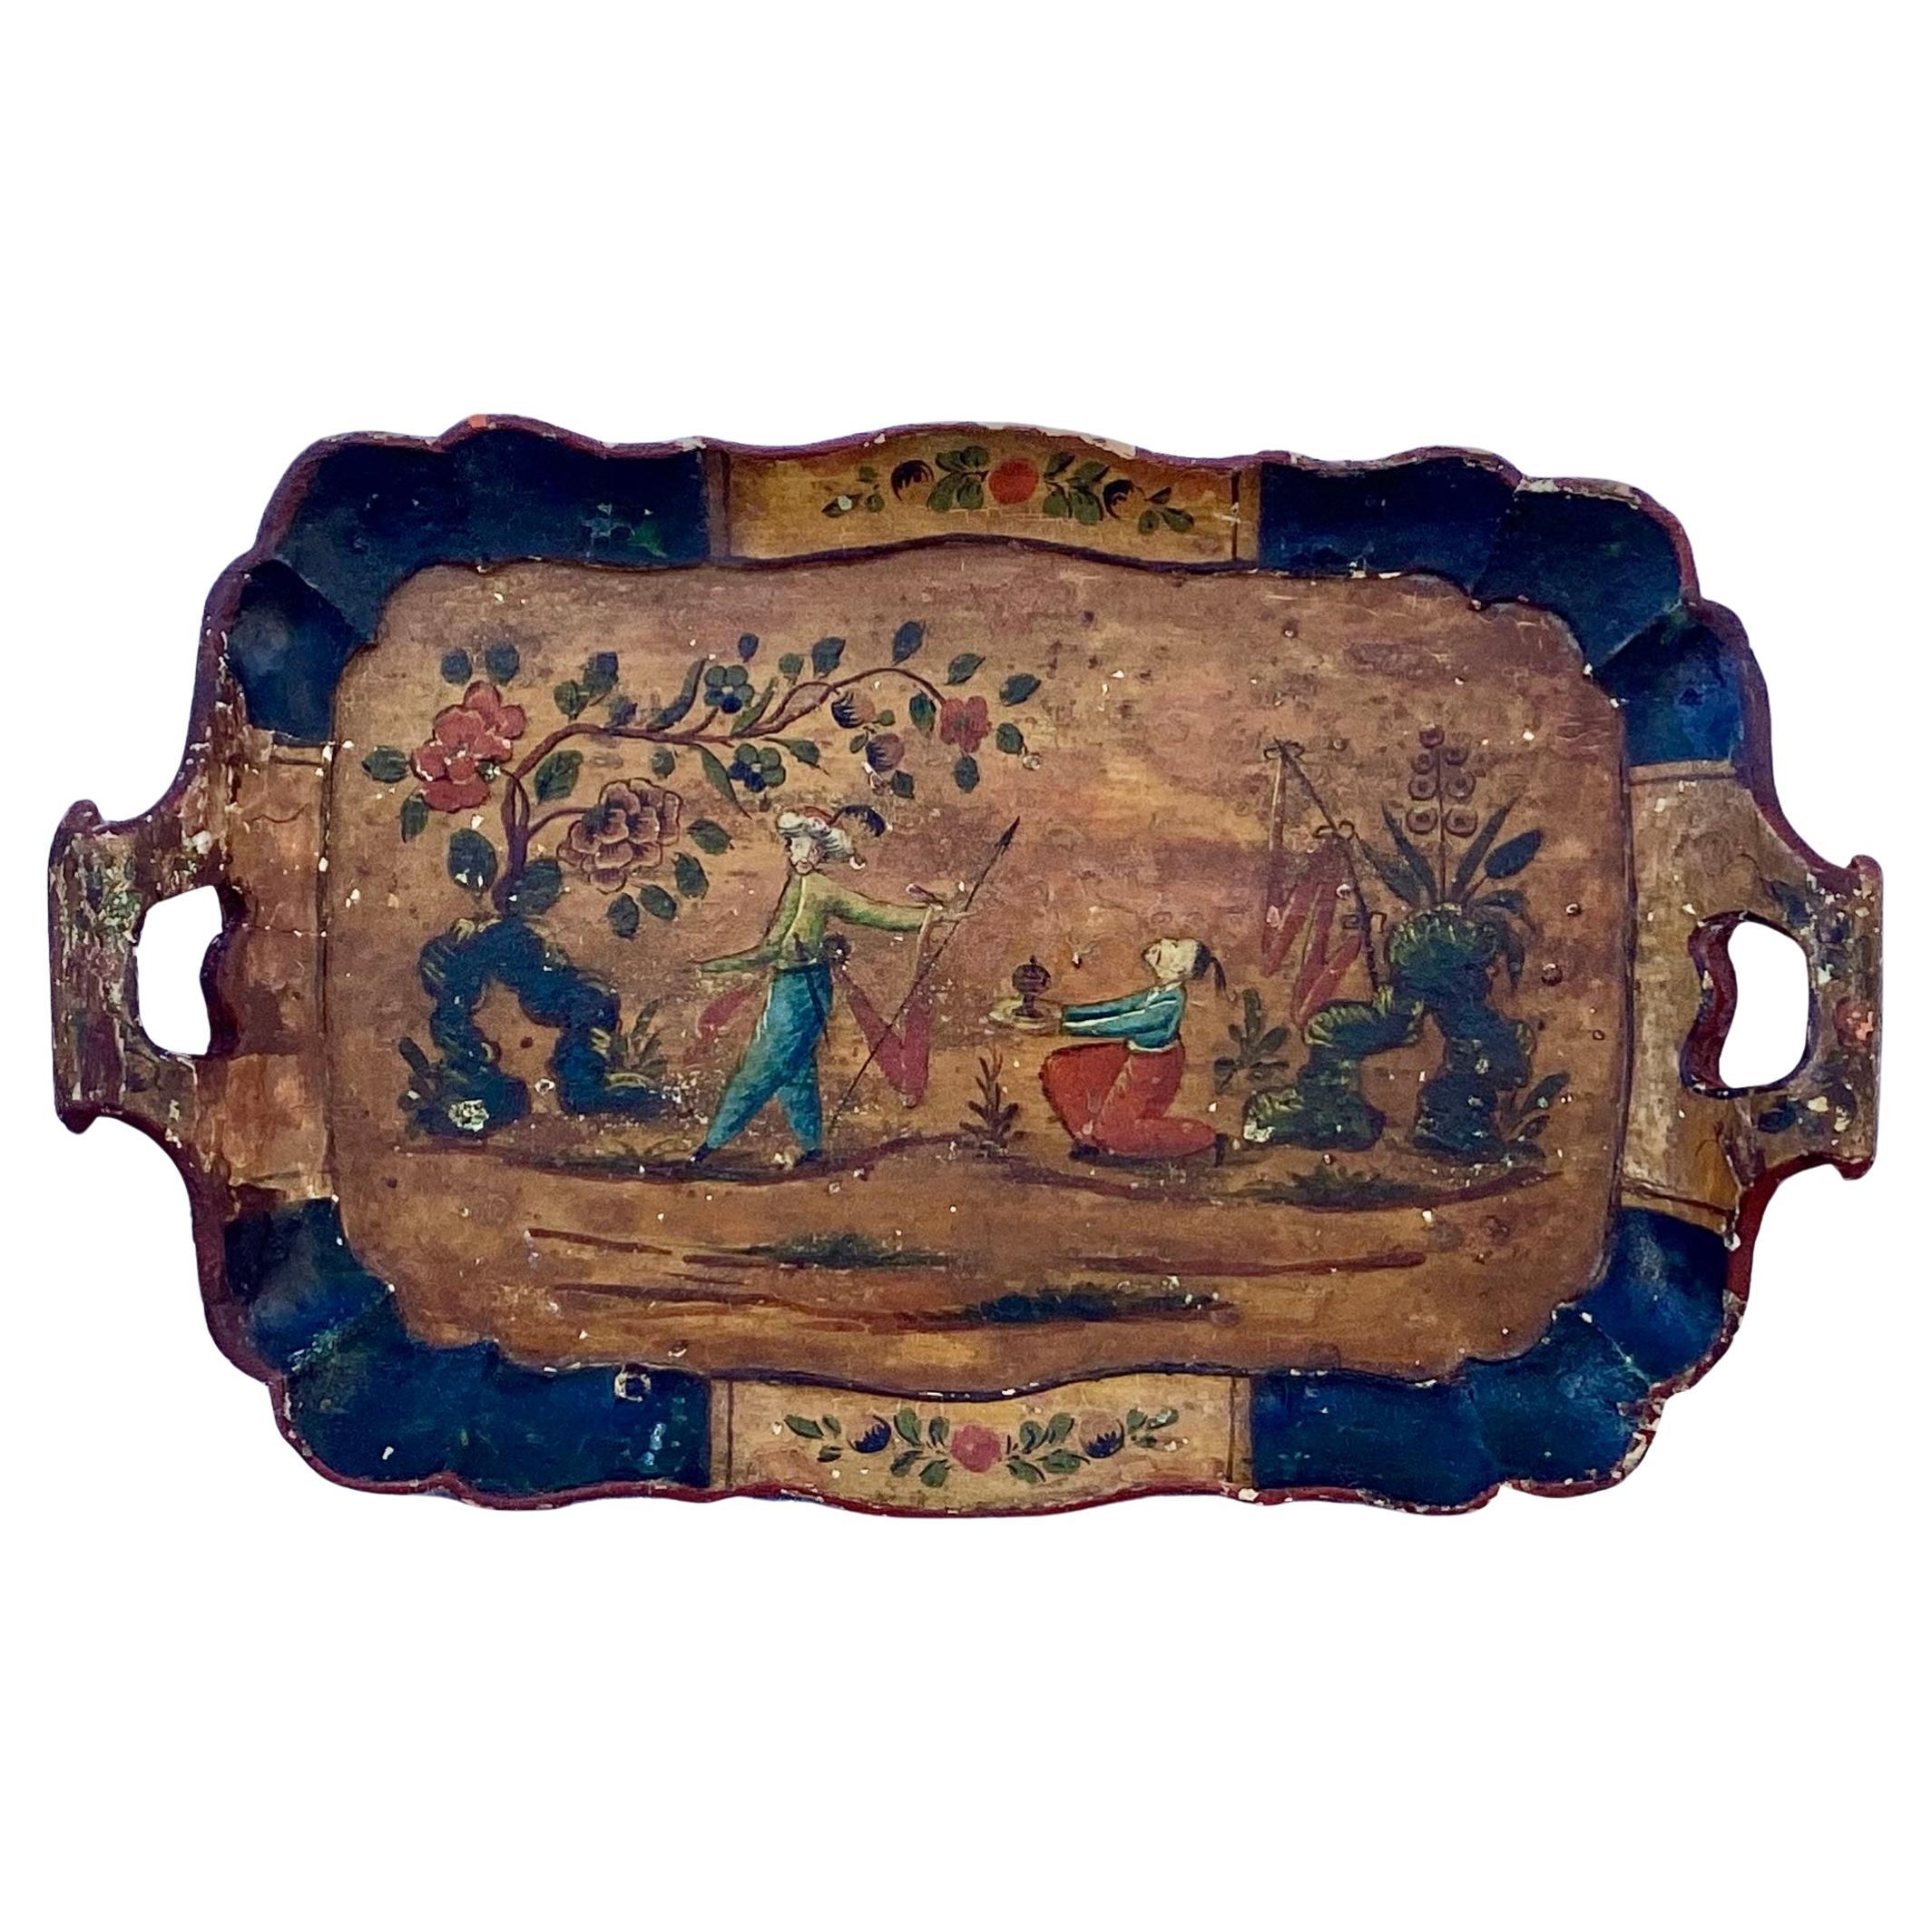 Großes venezianisches Holztablett aus dem 18. Jahrhundert mit Chinoiserie-Dekor. Blumen und chinesische Figuren in den Farben Rot und Grün auf dunklem Holzhintergrund.